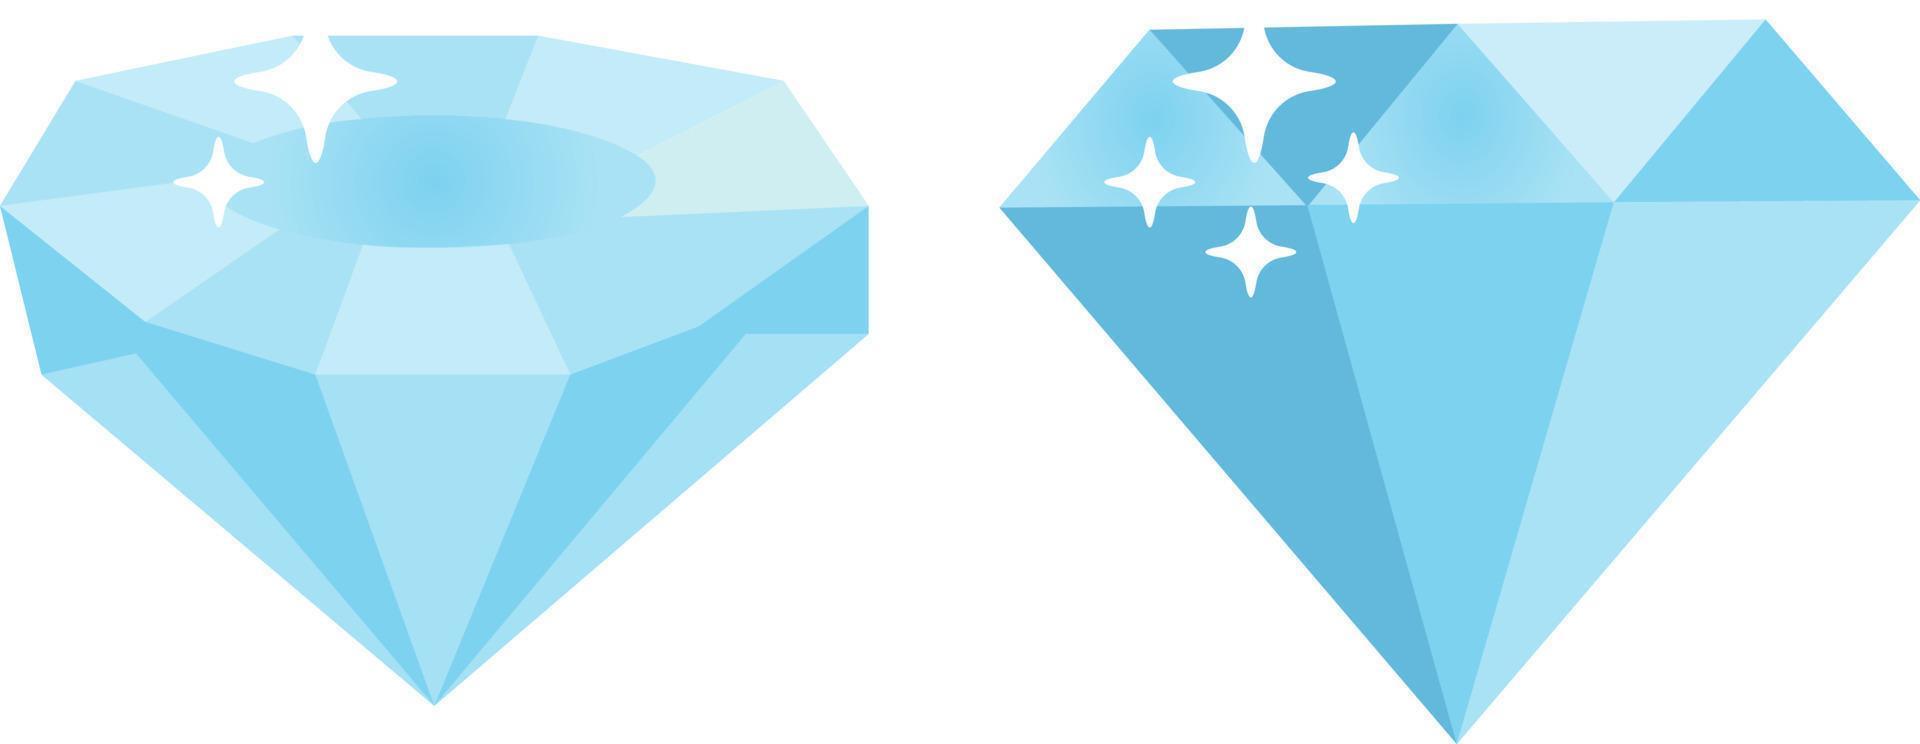 diamant bleu, illustration, vecteur sur fond blanc.